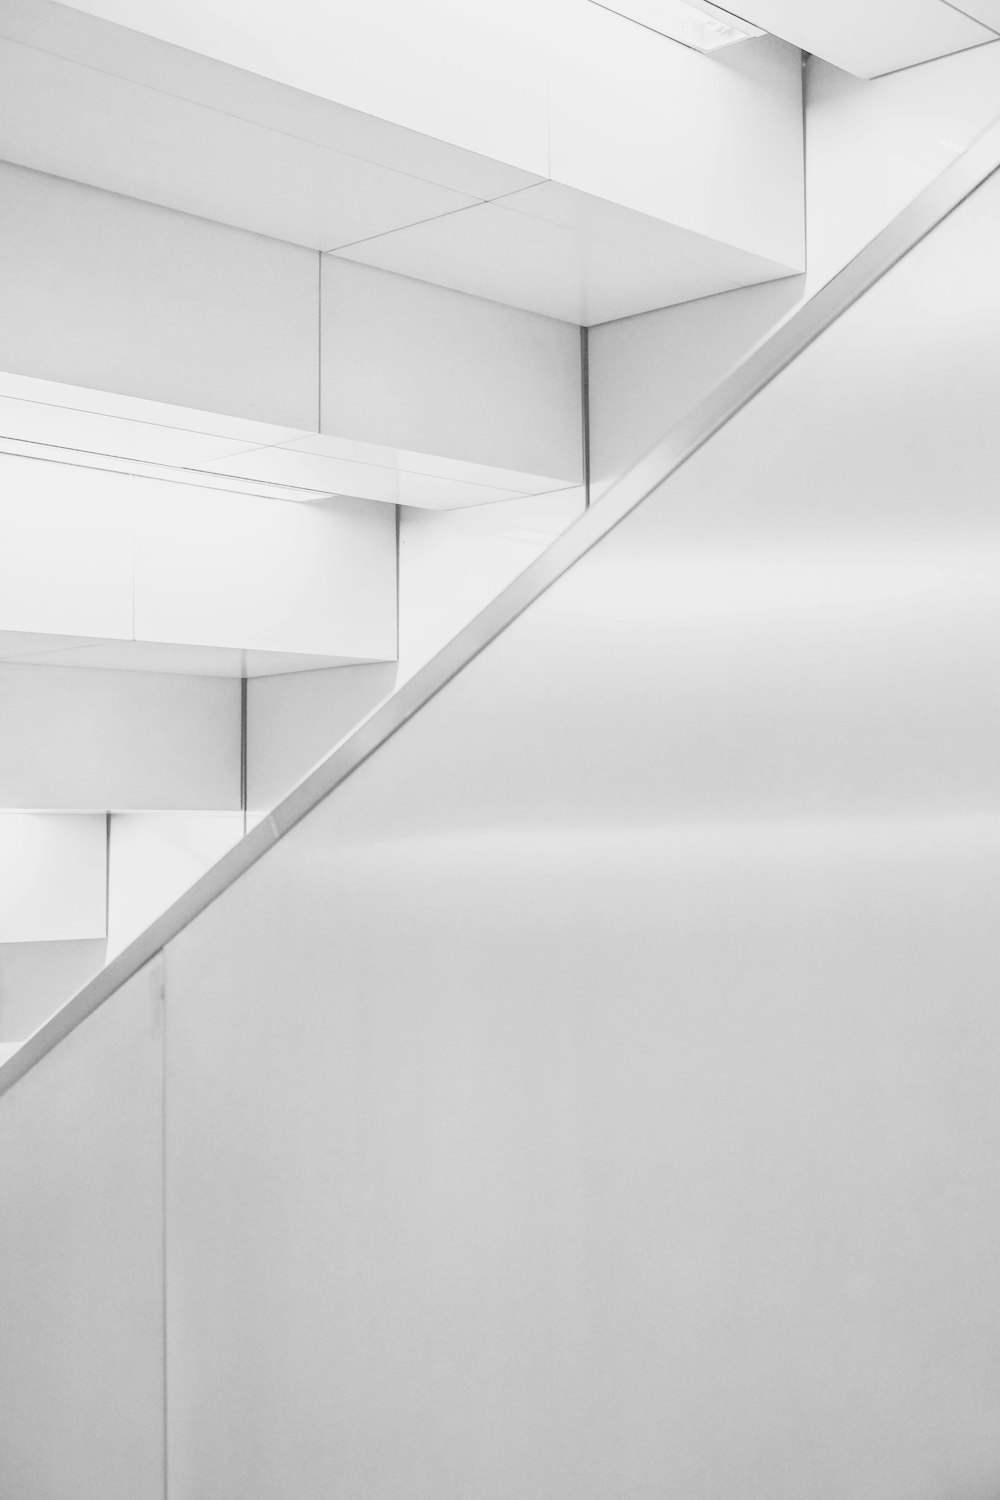 photo of white ceramic stair